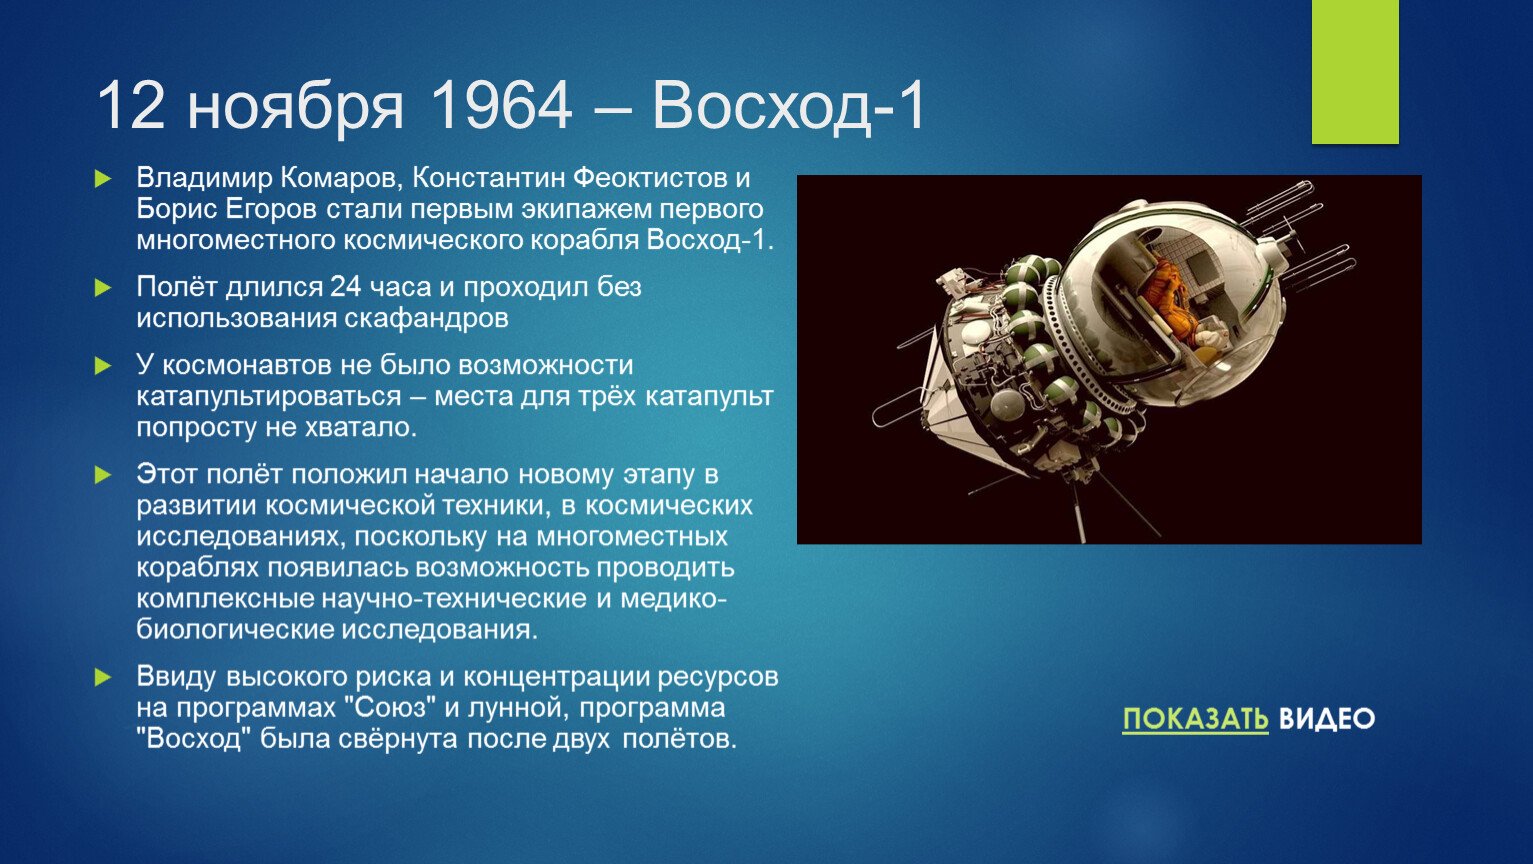 Скабер восход 1 читать. Космический корабль Восход 2 Леонова. Восход космический корабль 1964. Восход-1 космический корабль экипаж. Трехместный космический корабль Восход.